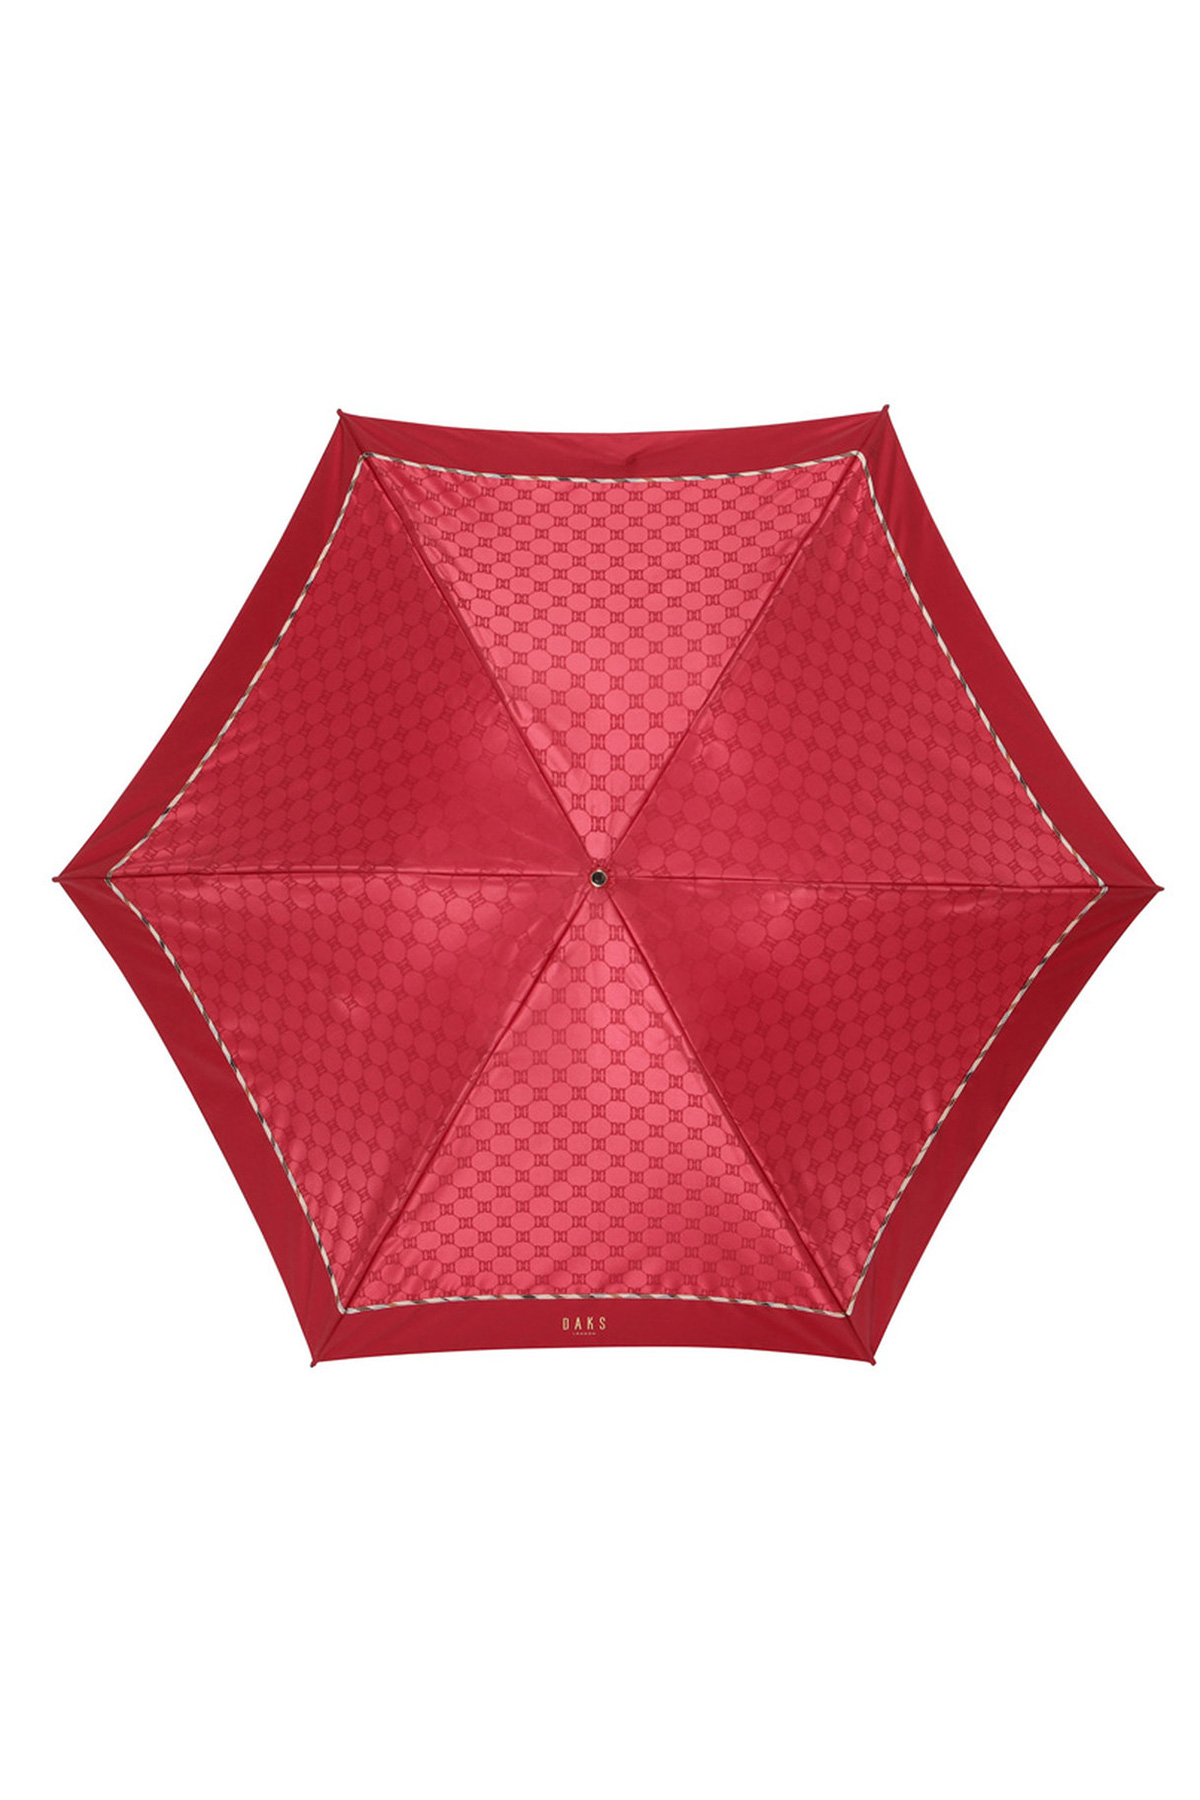 【雨傘】折りたたみ傘クイックアーチジャカード 詳細画像 4